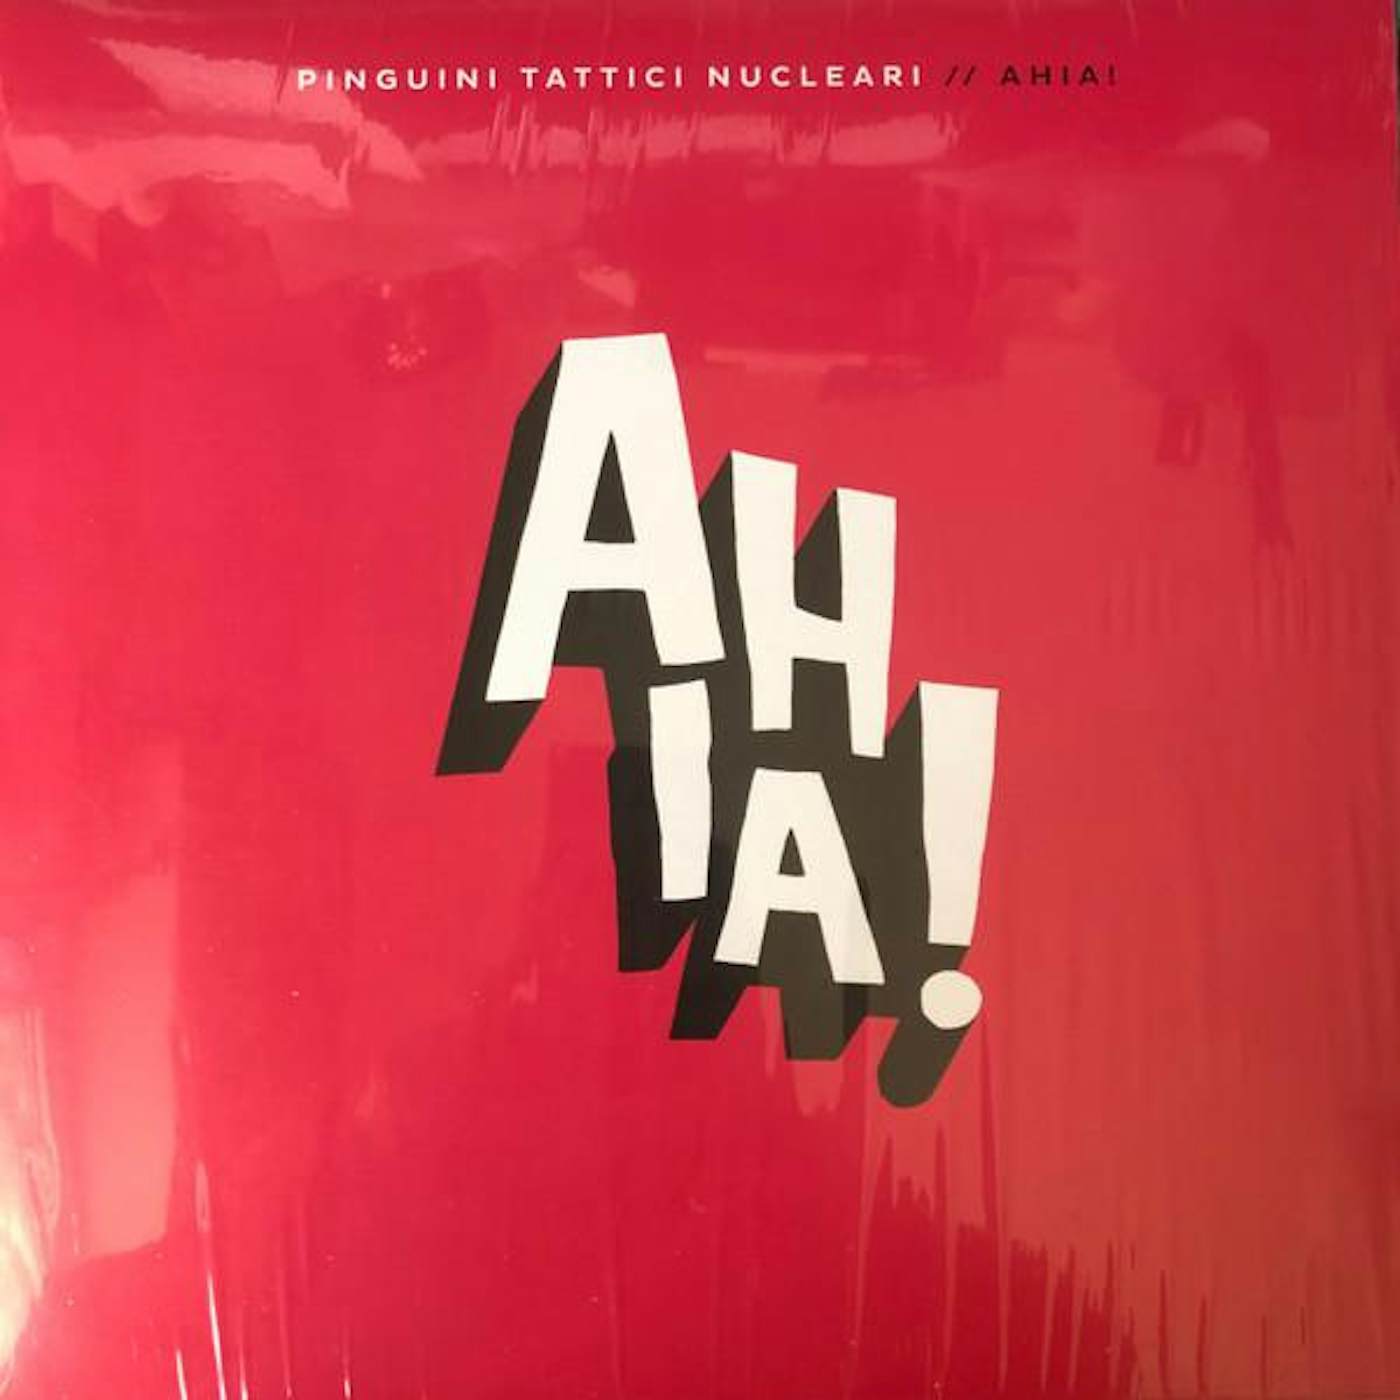 Pinguini Tattici Nucleari AHIA Vinyl Record